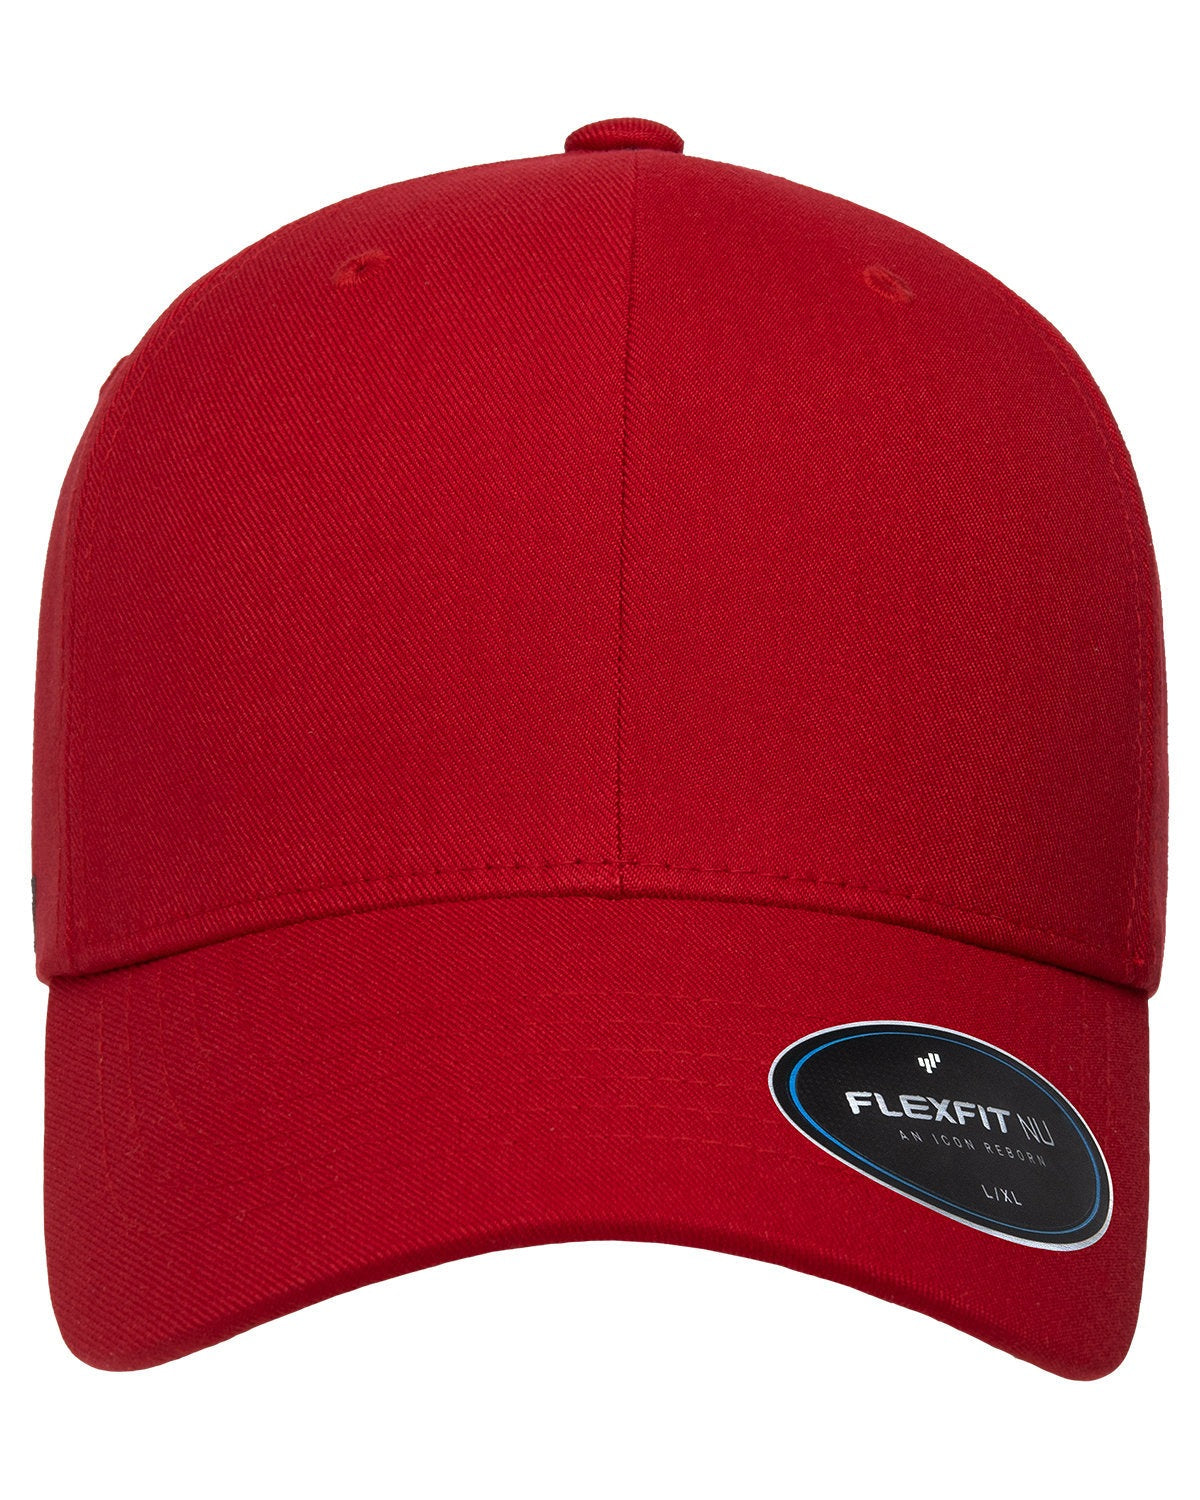 Nu | Flexfit Eden 6100NU Wholesale Lopez Hat